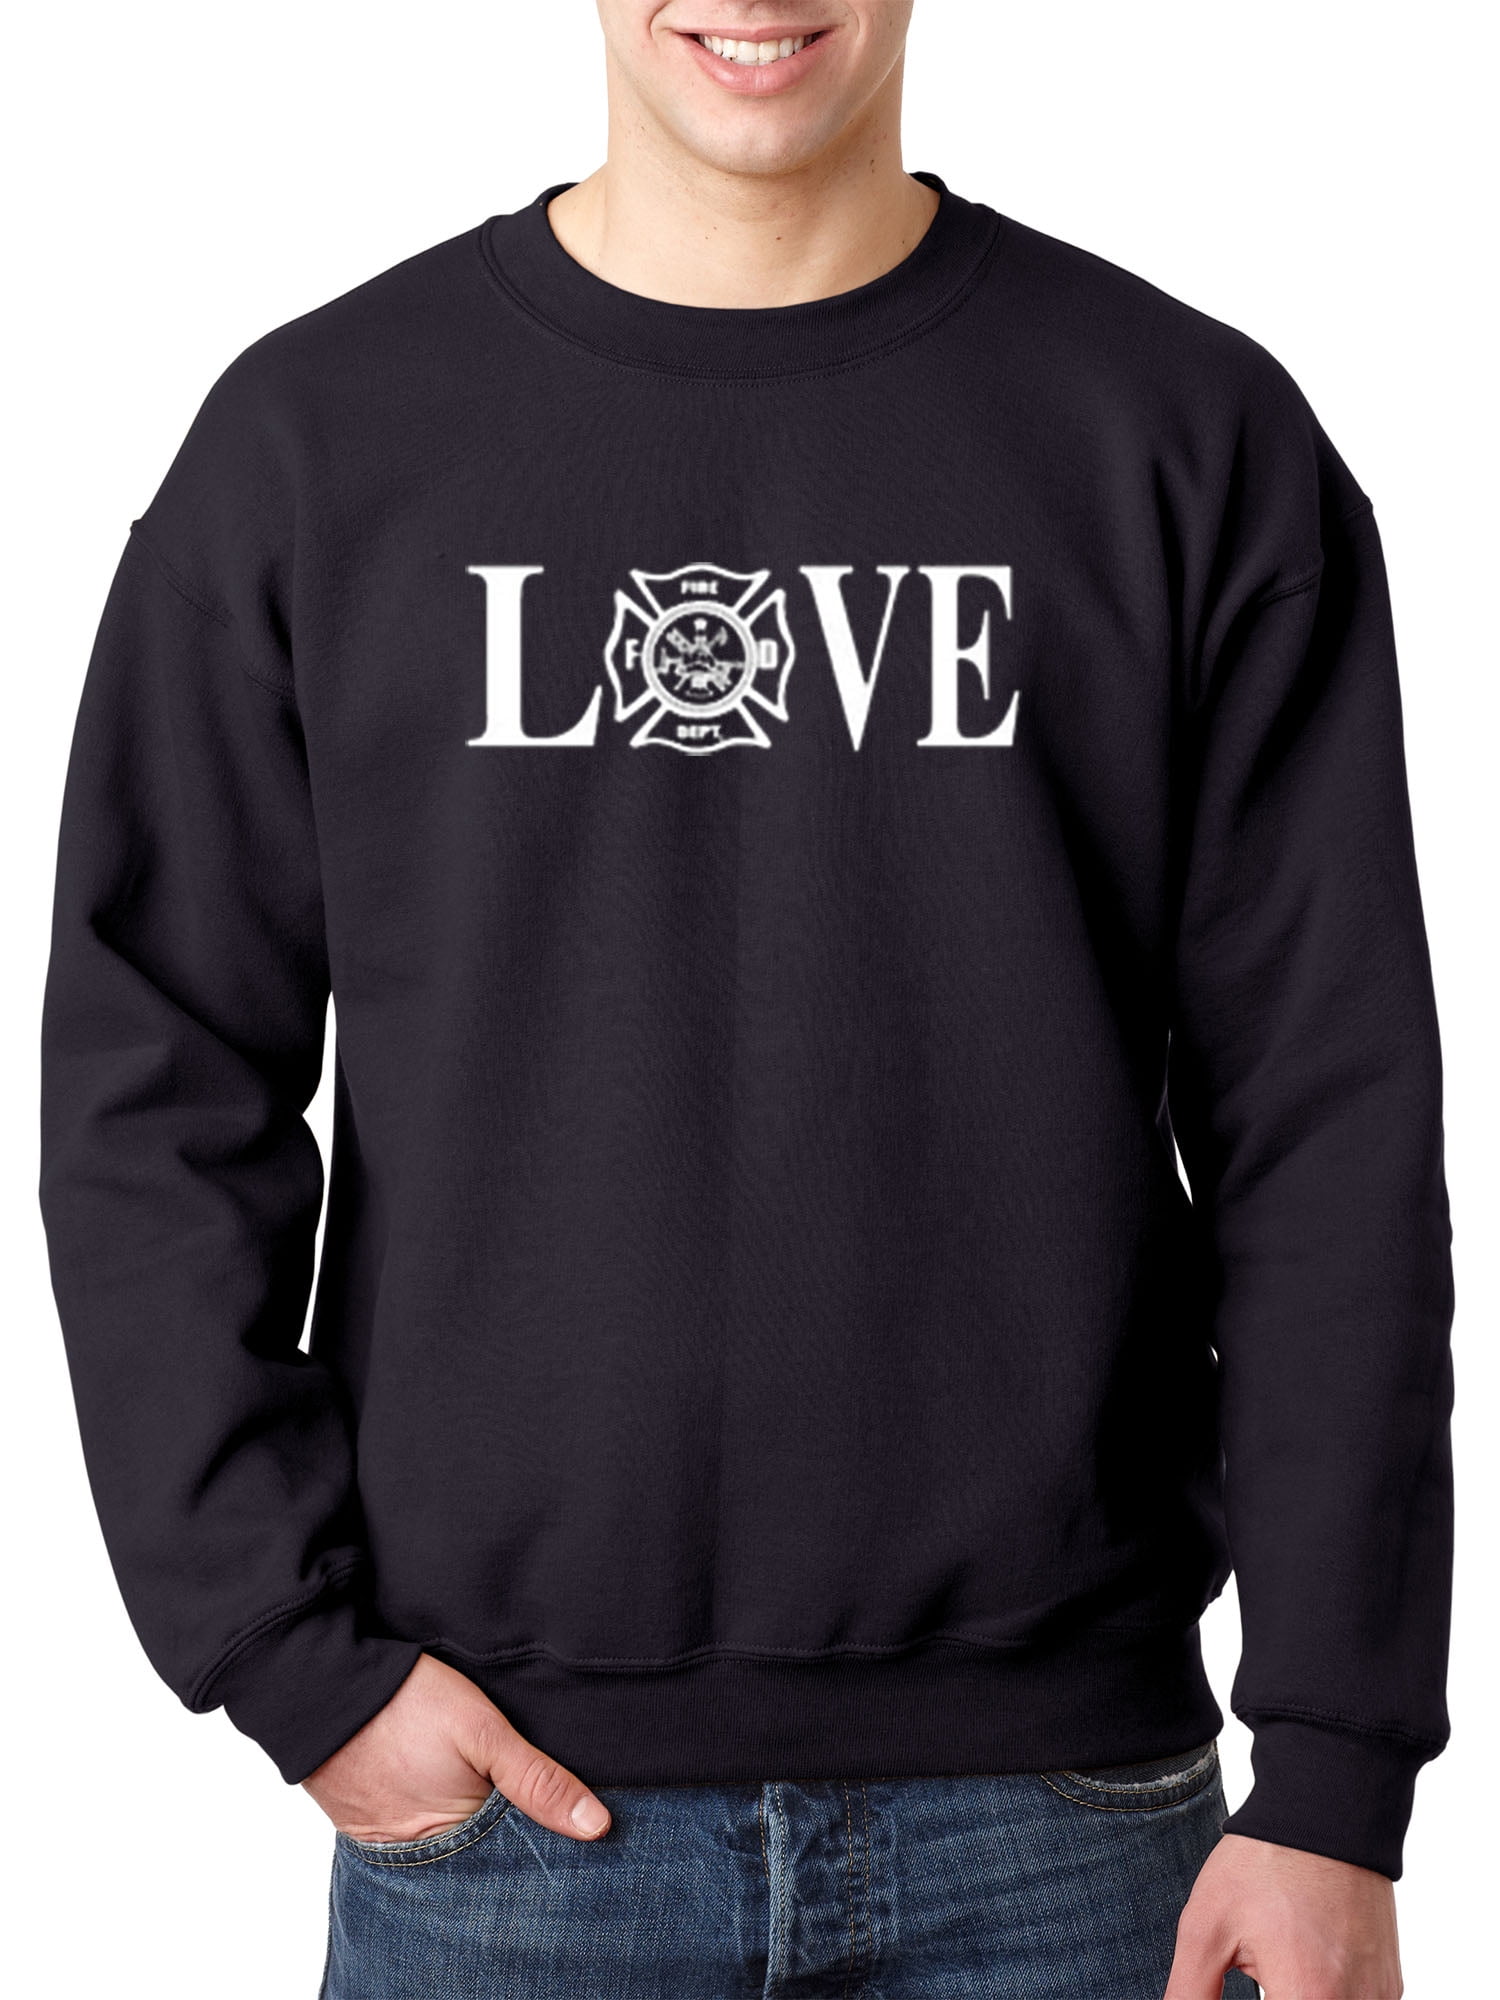 Details about   Best Match Love Heart Fireman Firefighter Popular Premium T-Shirt Size S to 3XL 